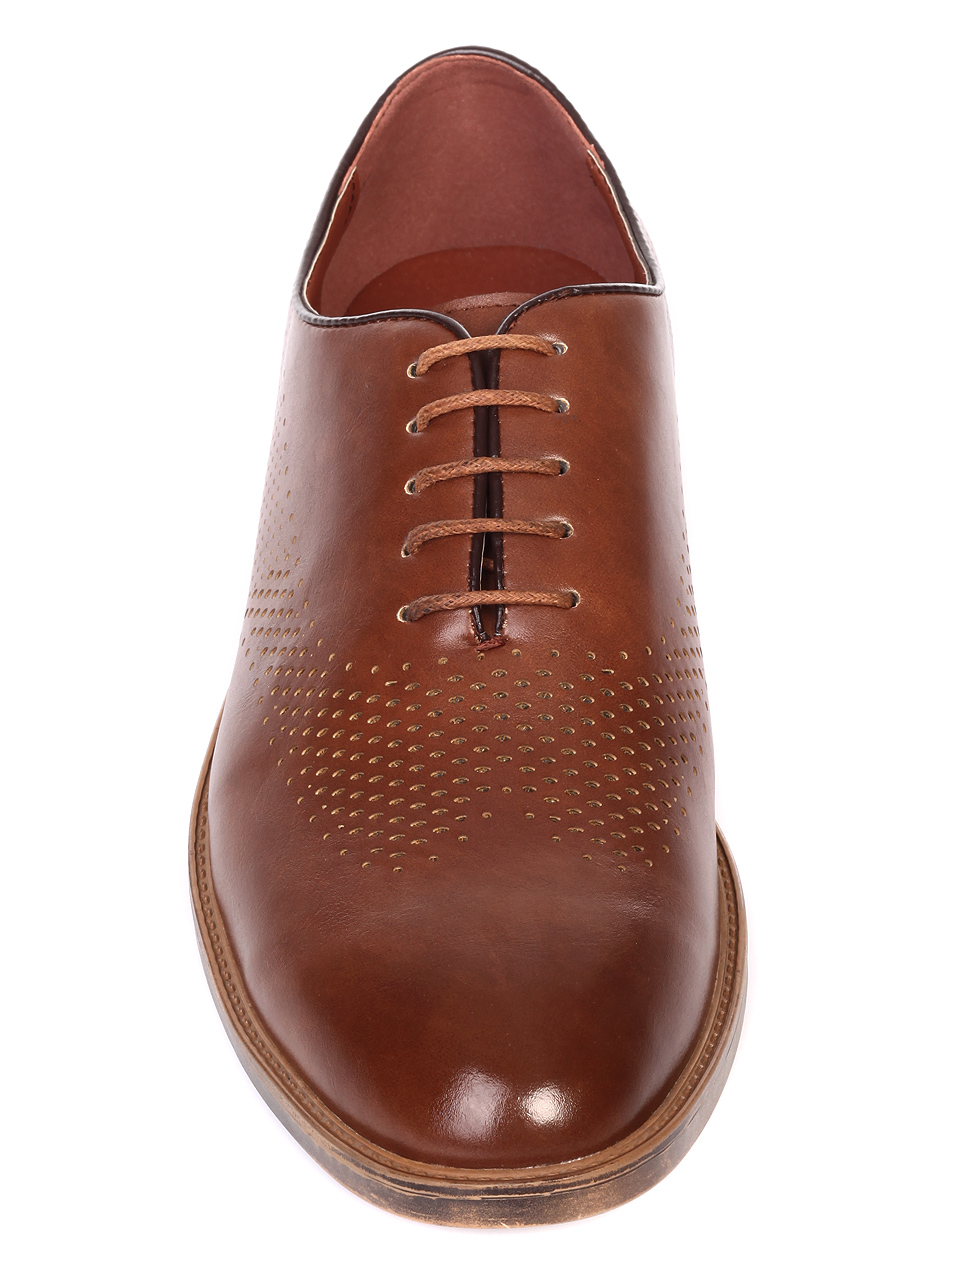 Елегантни мъжки обувки в кафяво 7W-19110 brown